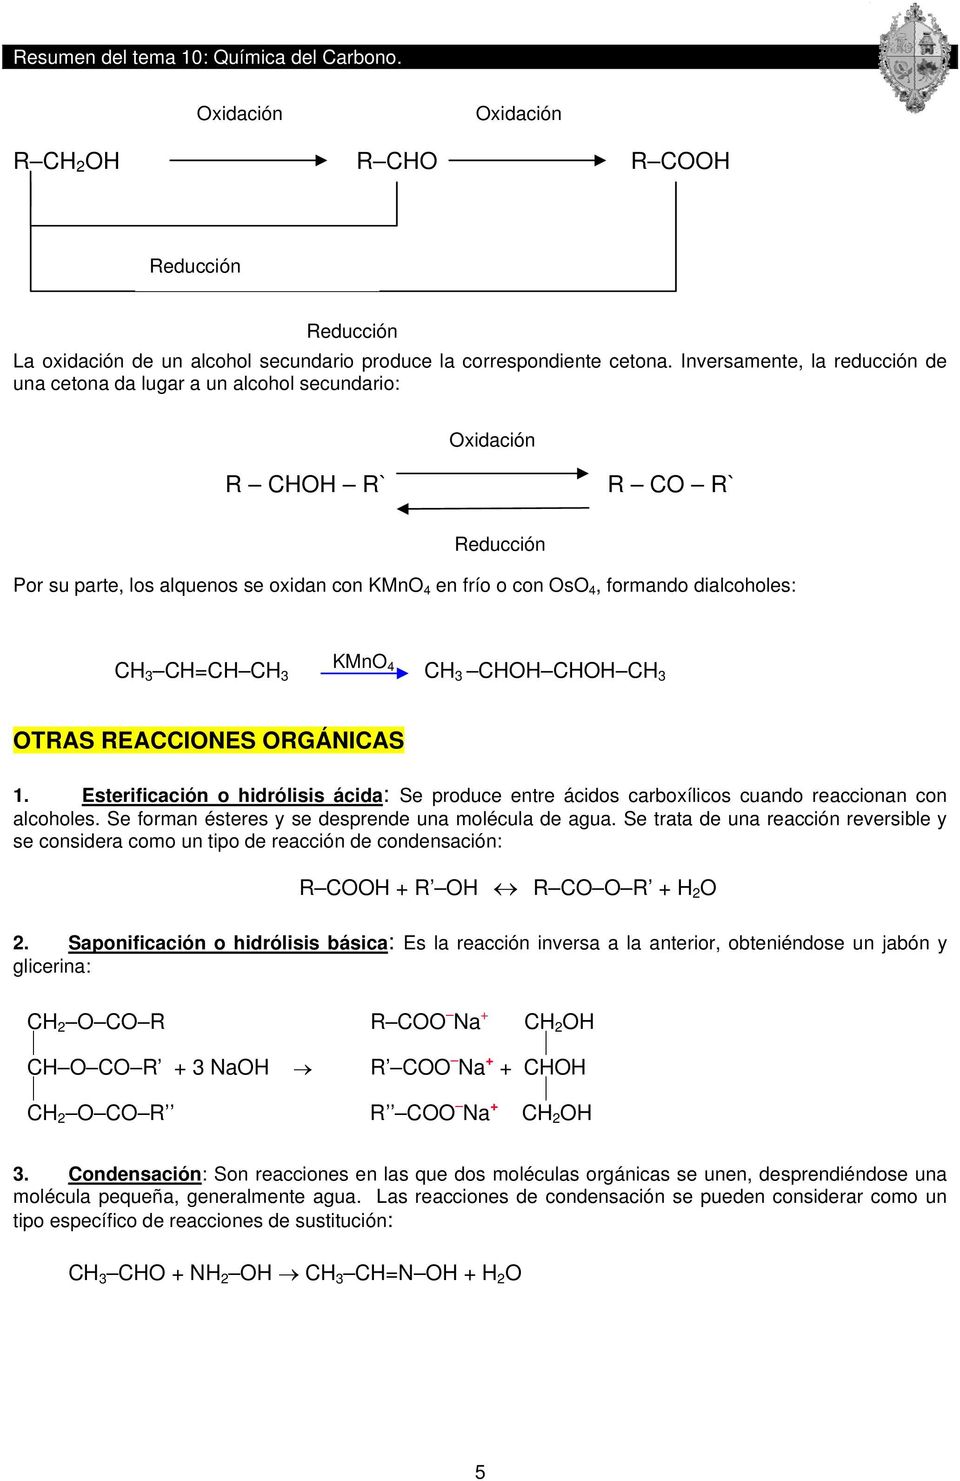 KMnO 3 = 4 3 3 O O 3 OTRAS REAIONES ORGÁNIAS 1. Esterificación o hidrólisis ácida: Se produce entre ácidos carboxílicos cuando reaccionan con alcoholes.